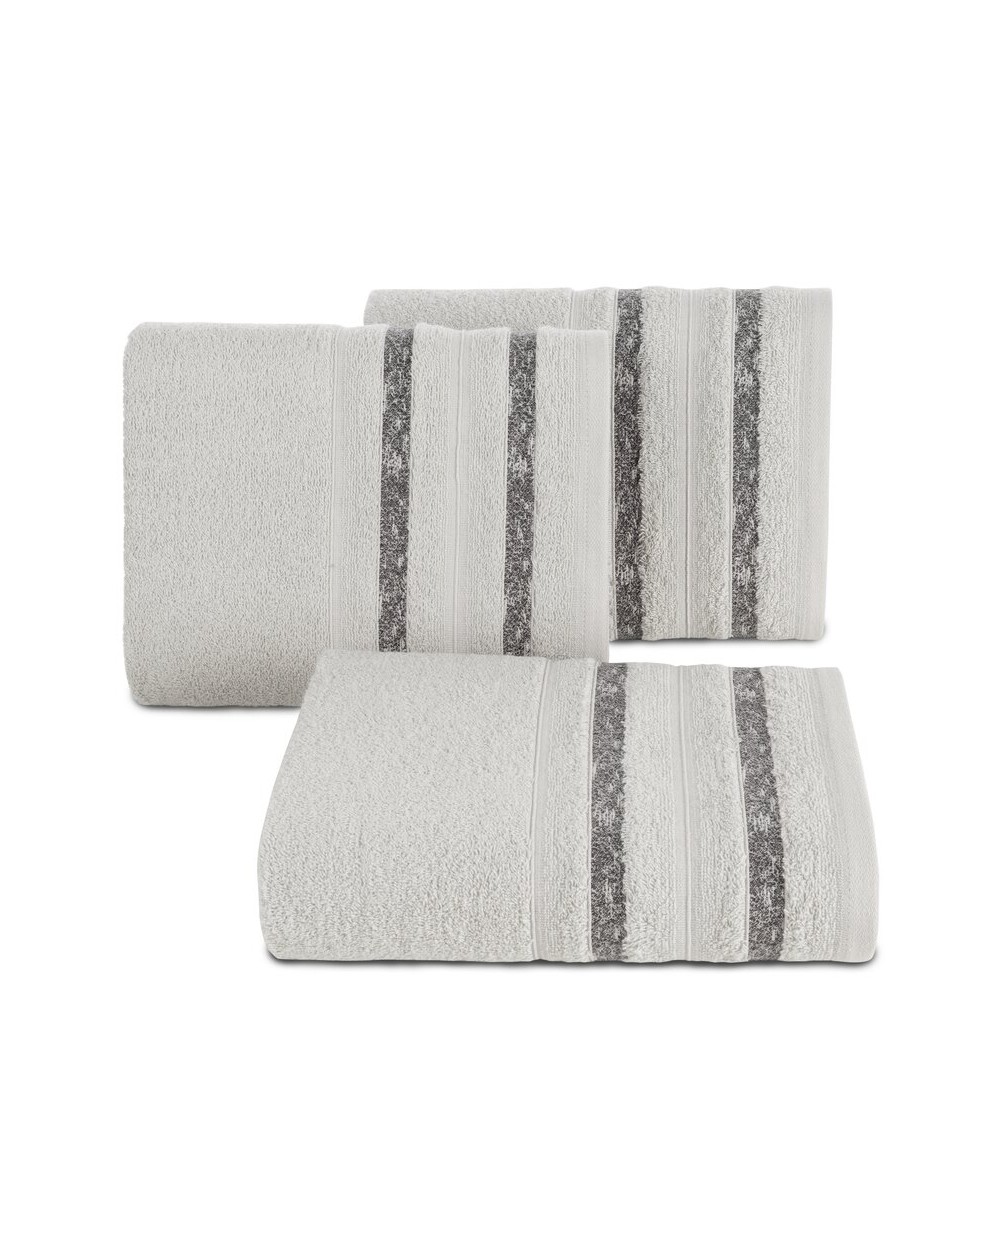 Ręcznik bawełna 50x90 Fargo srebrny